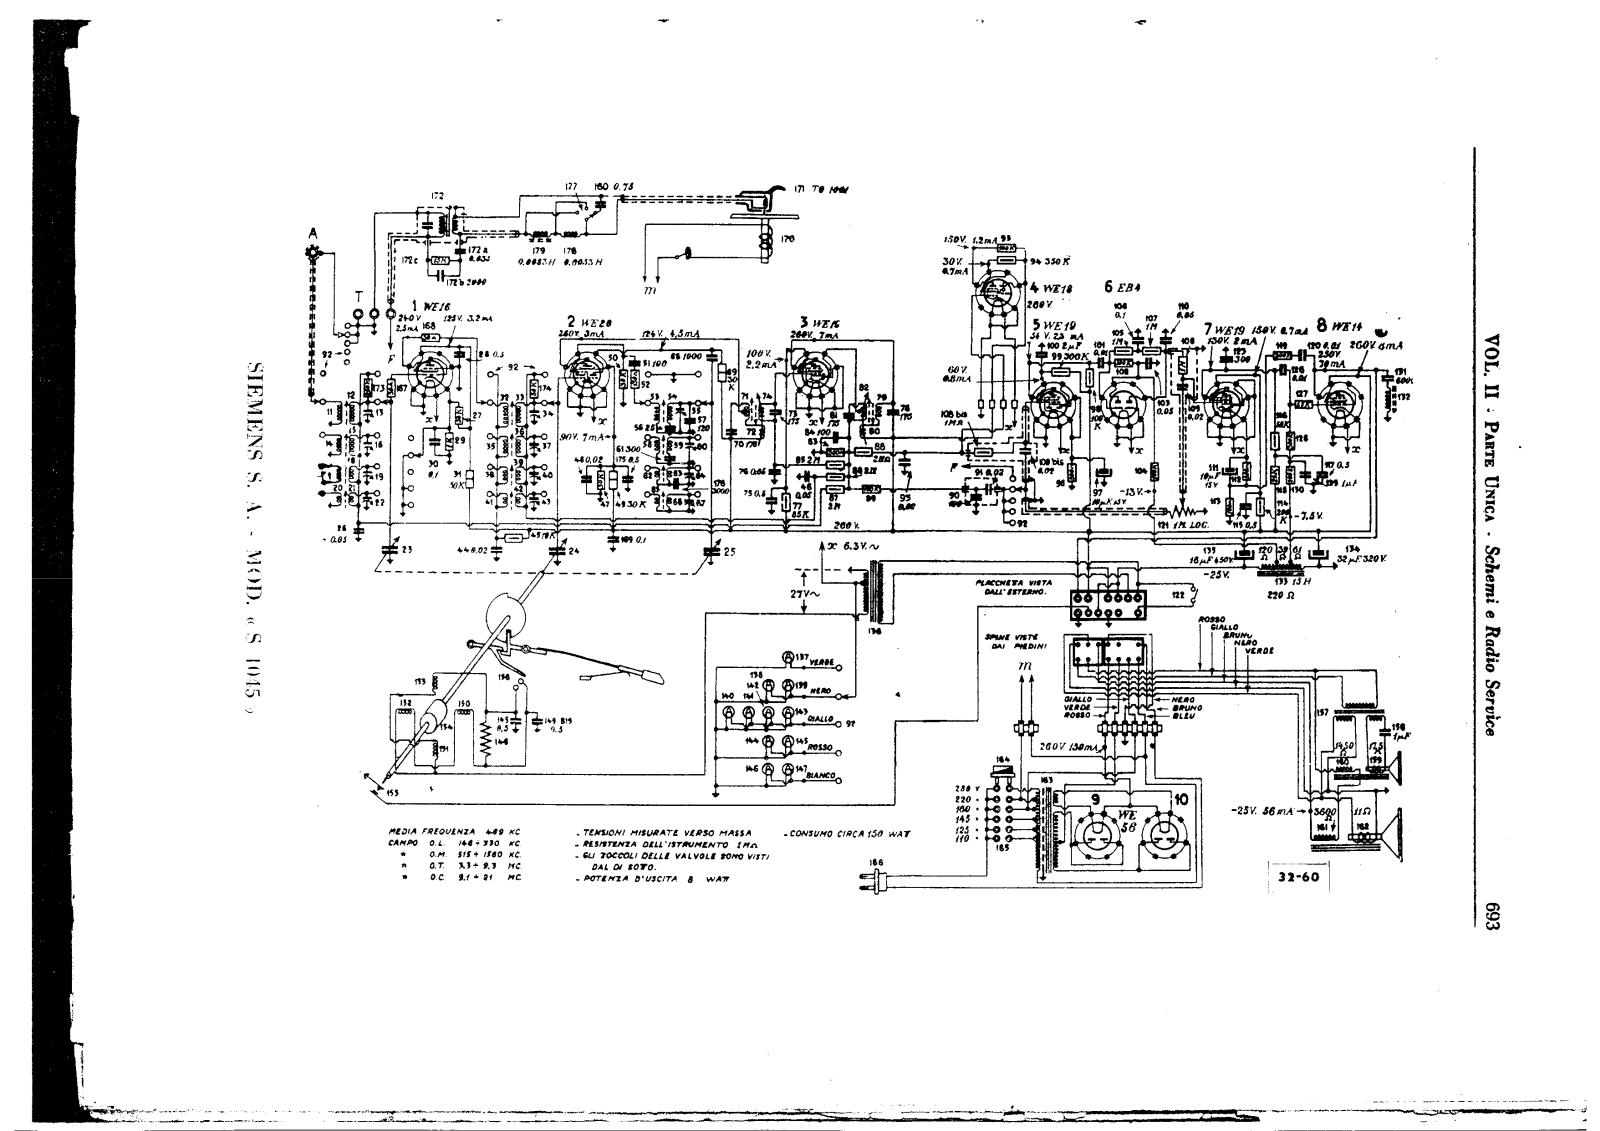 Siemens s 1045 schematic